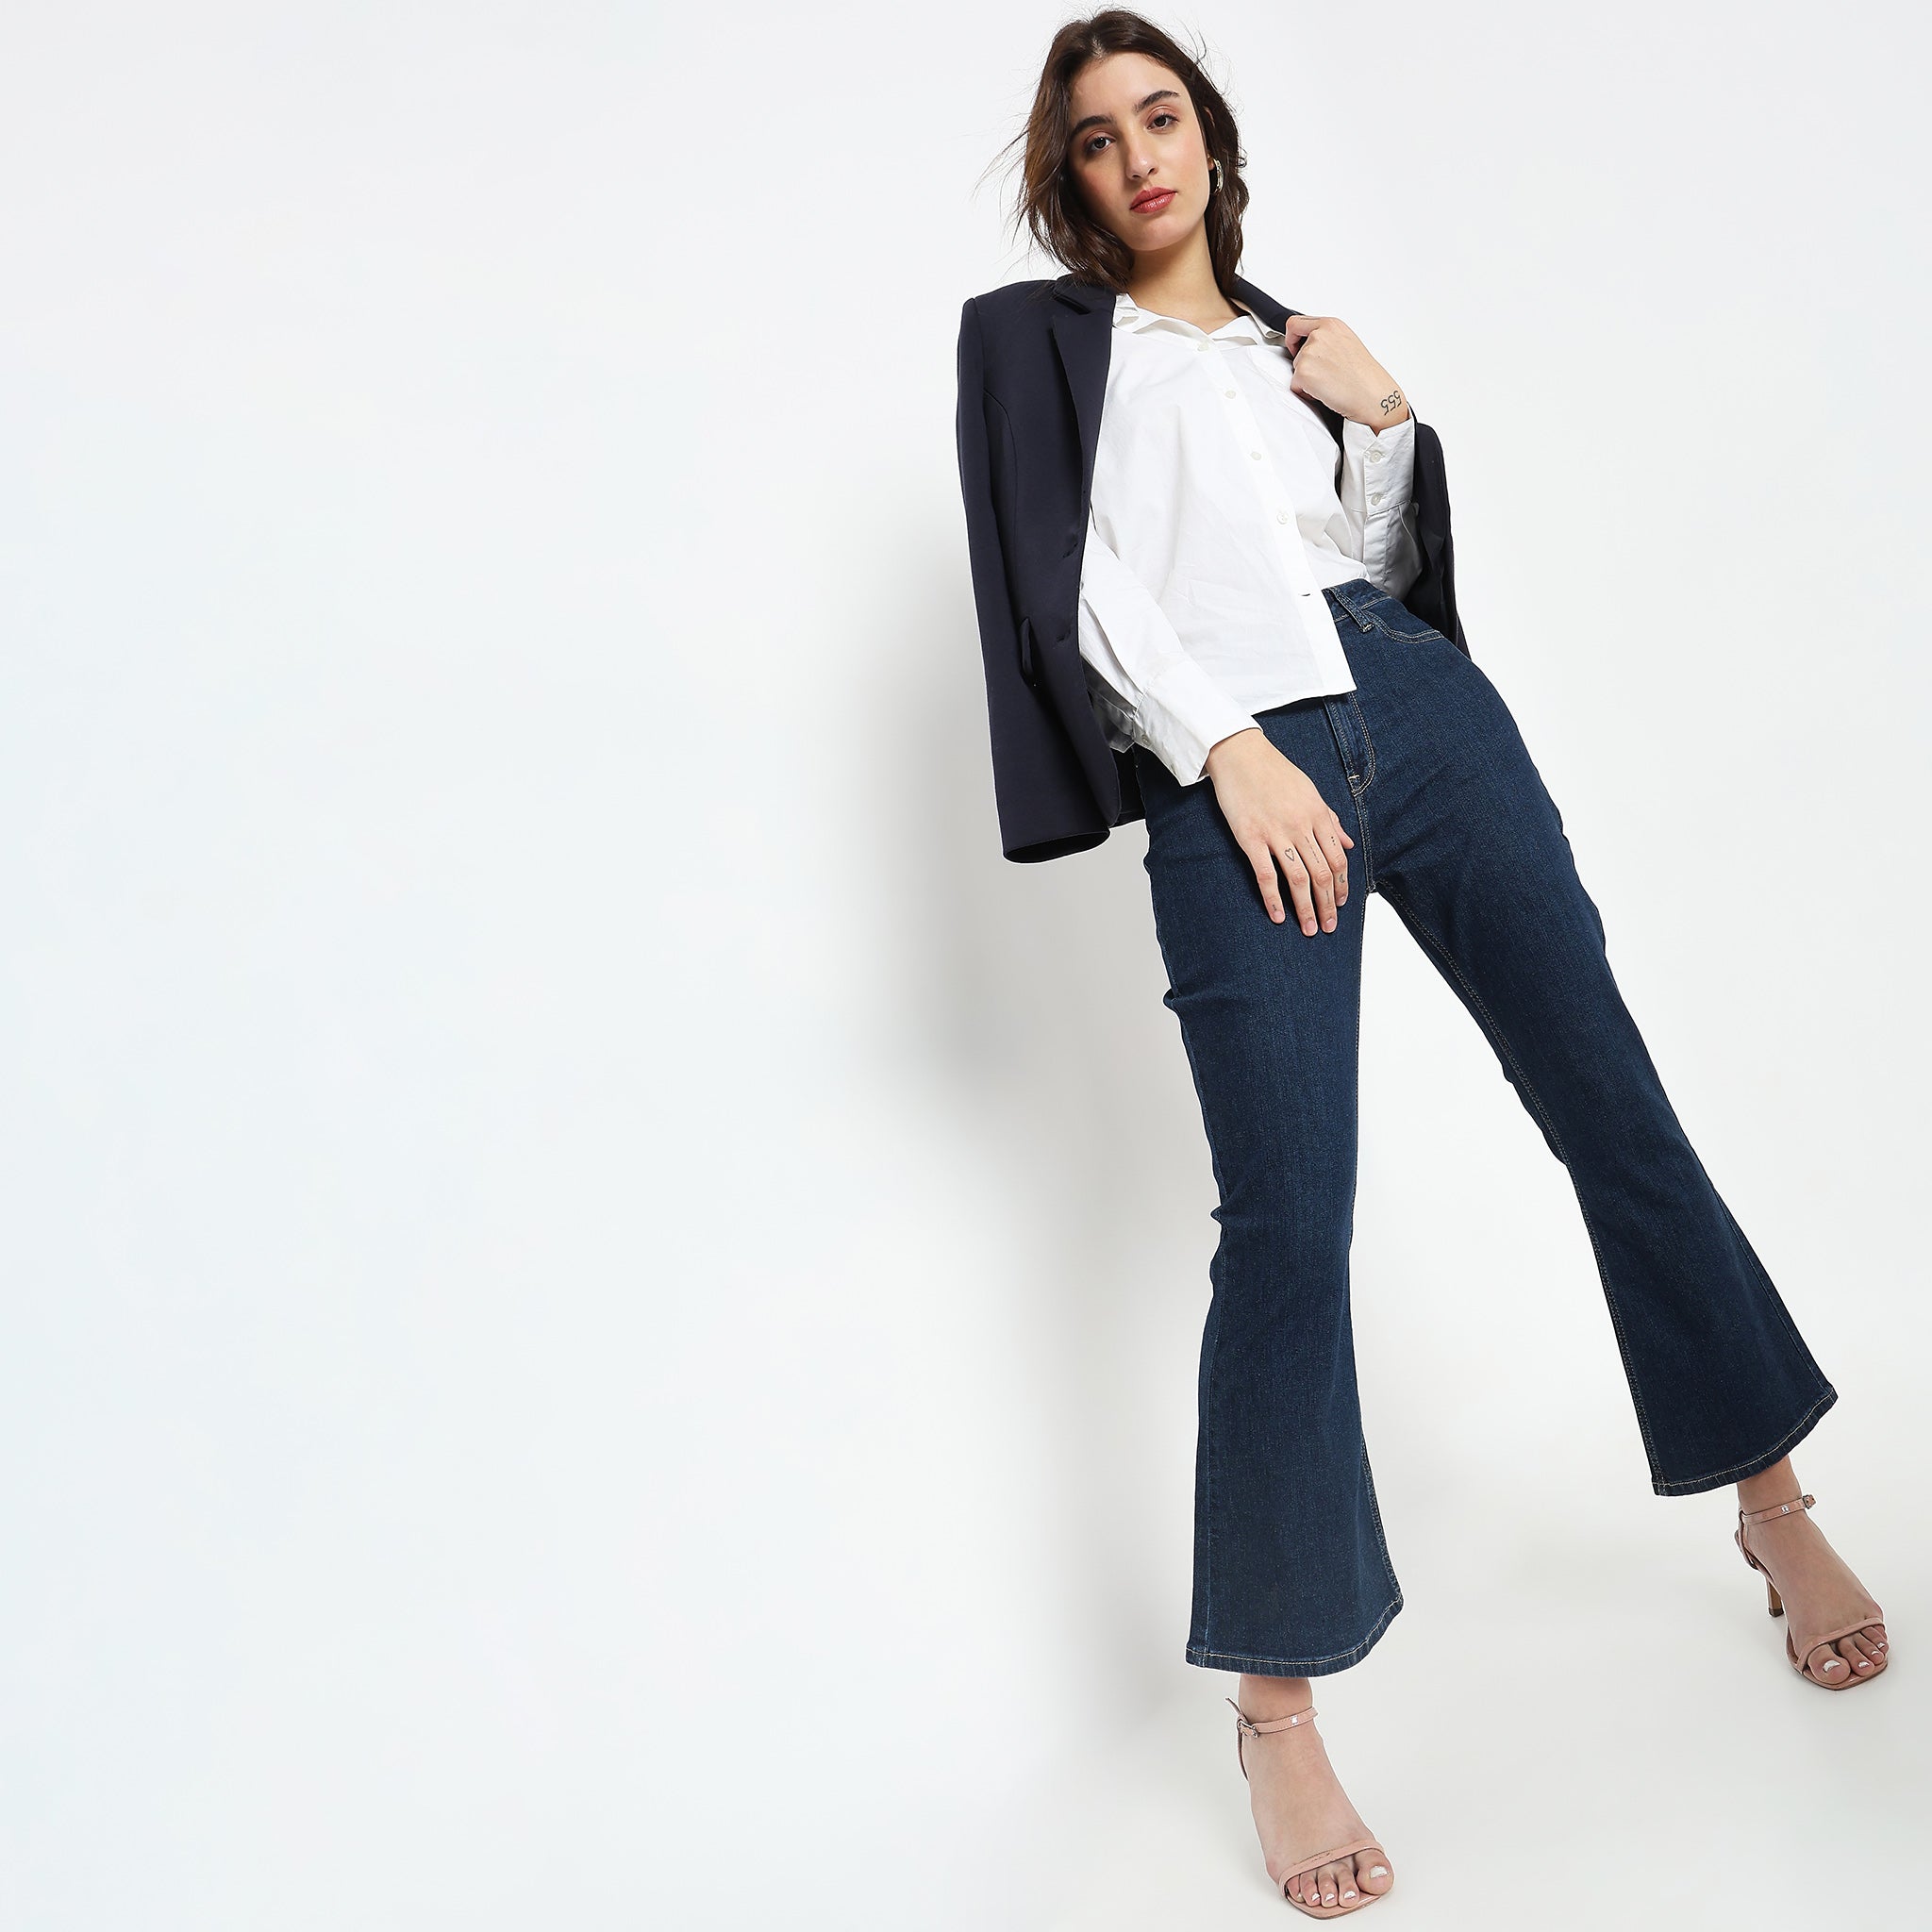 Buy Vie Ladies Slim Fit Blue Jeans Online - Lulu Hypermarket India